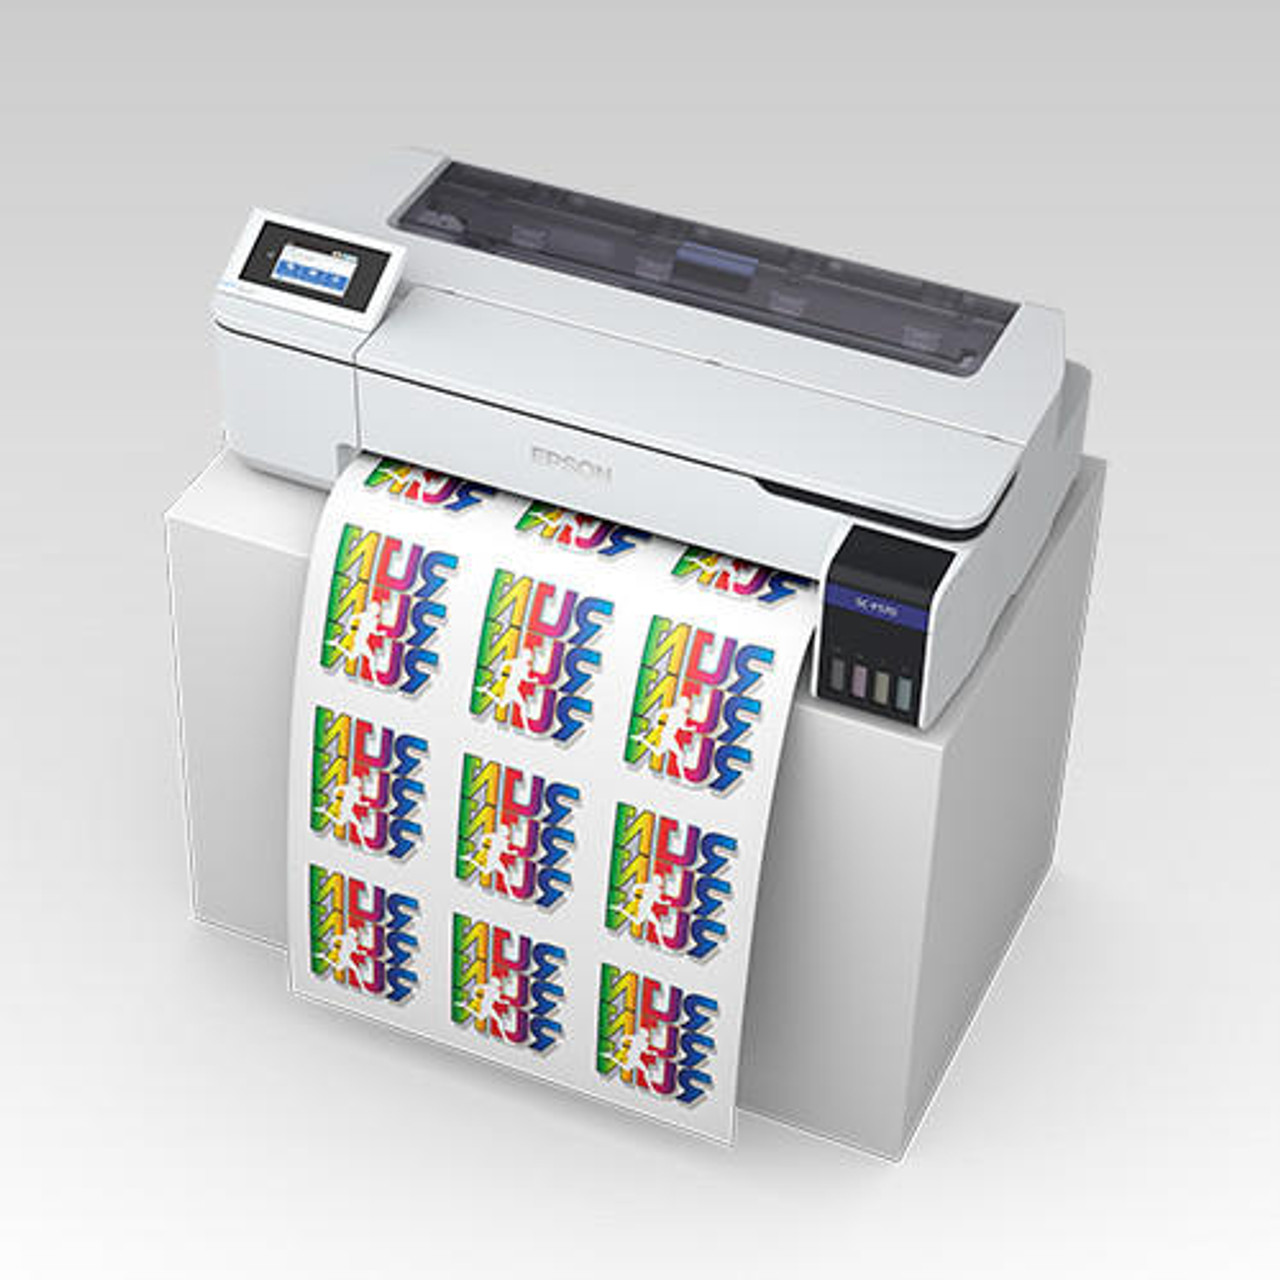 SureColor F570 Dye-Sublimation Printer, Dye sublimation printer, F570  printer, Epson 24 inches printer